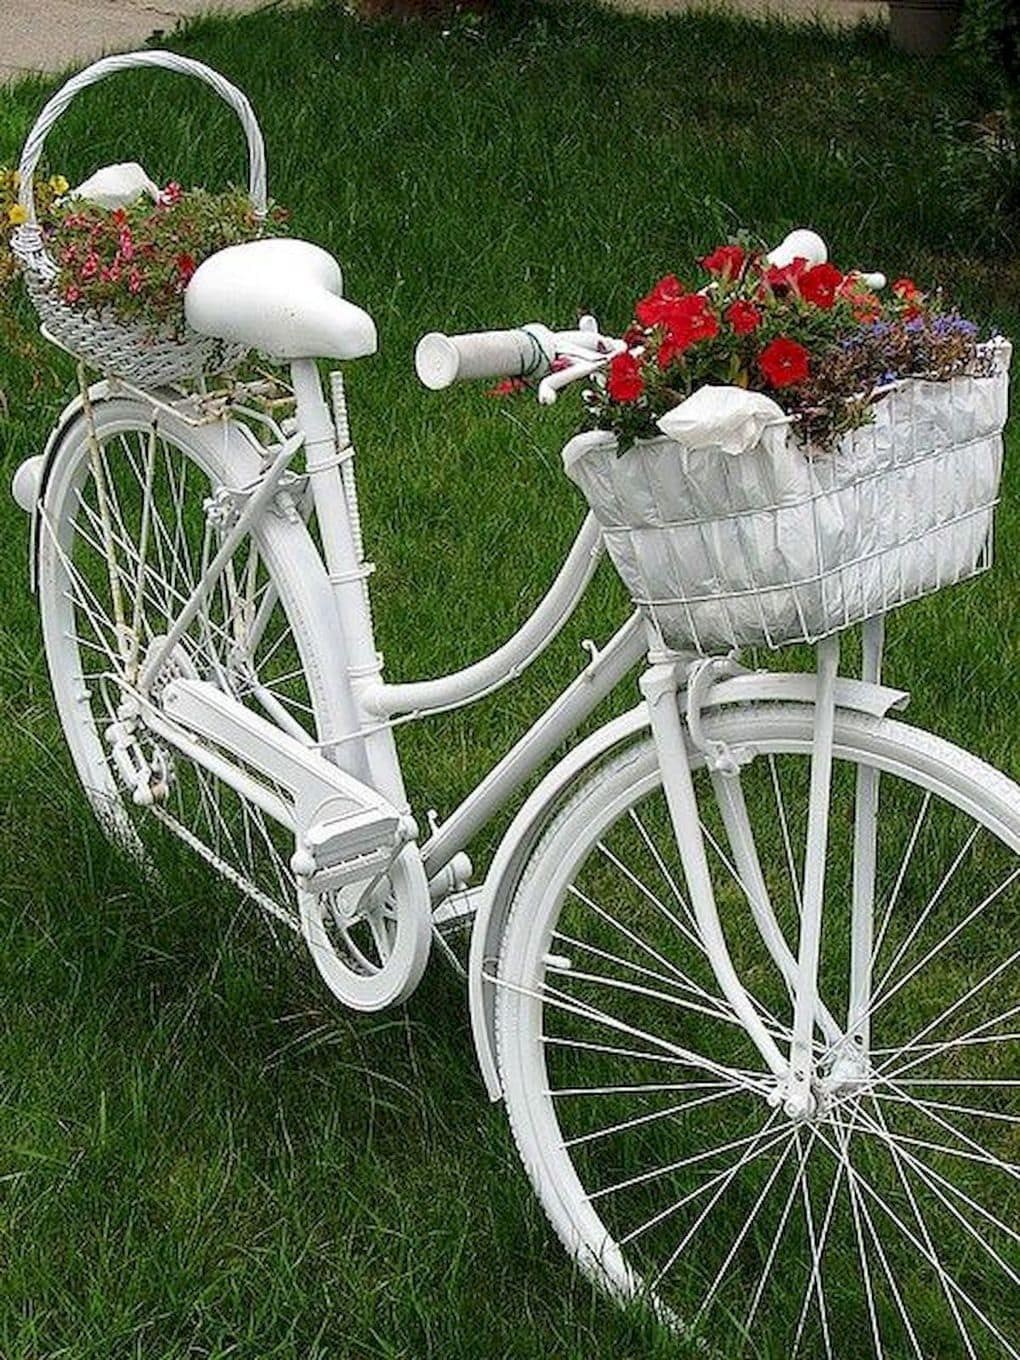 Старый велосипед с цветами — декоративная подставка для дачи: 2 комментария